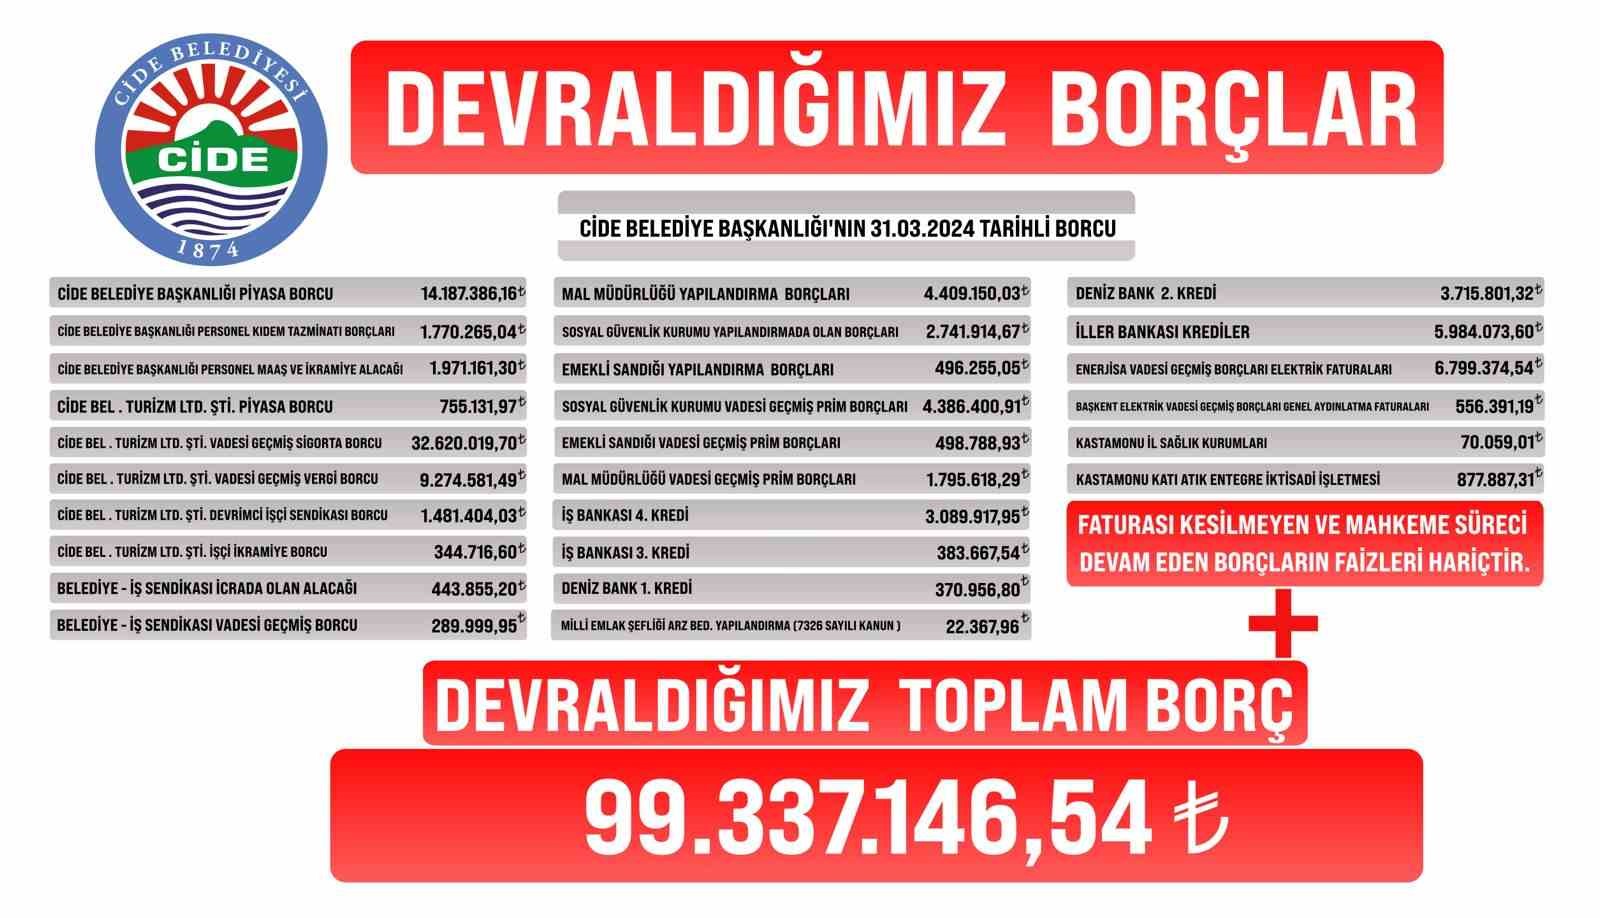 Cide Belediyesi’nin borcu dev afişle duyuruldu: "99 milyon lira borç bulunuyor"
